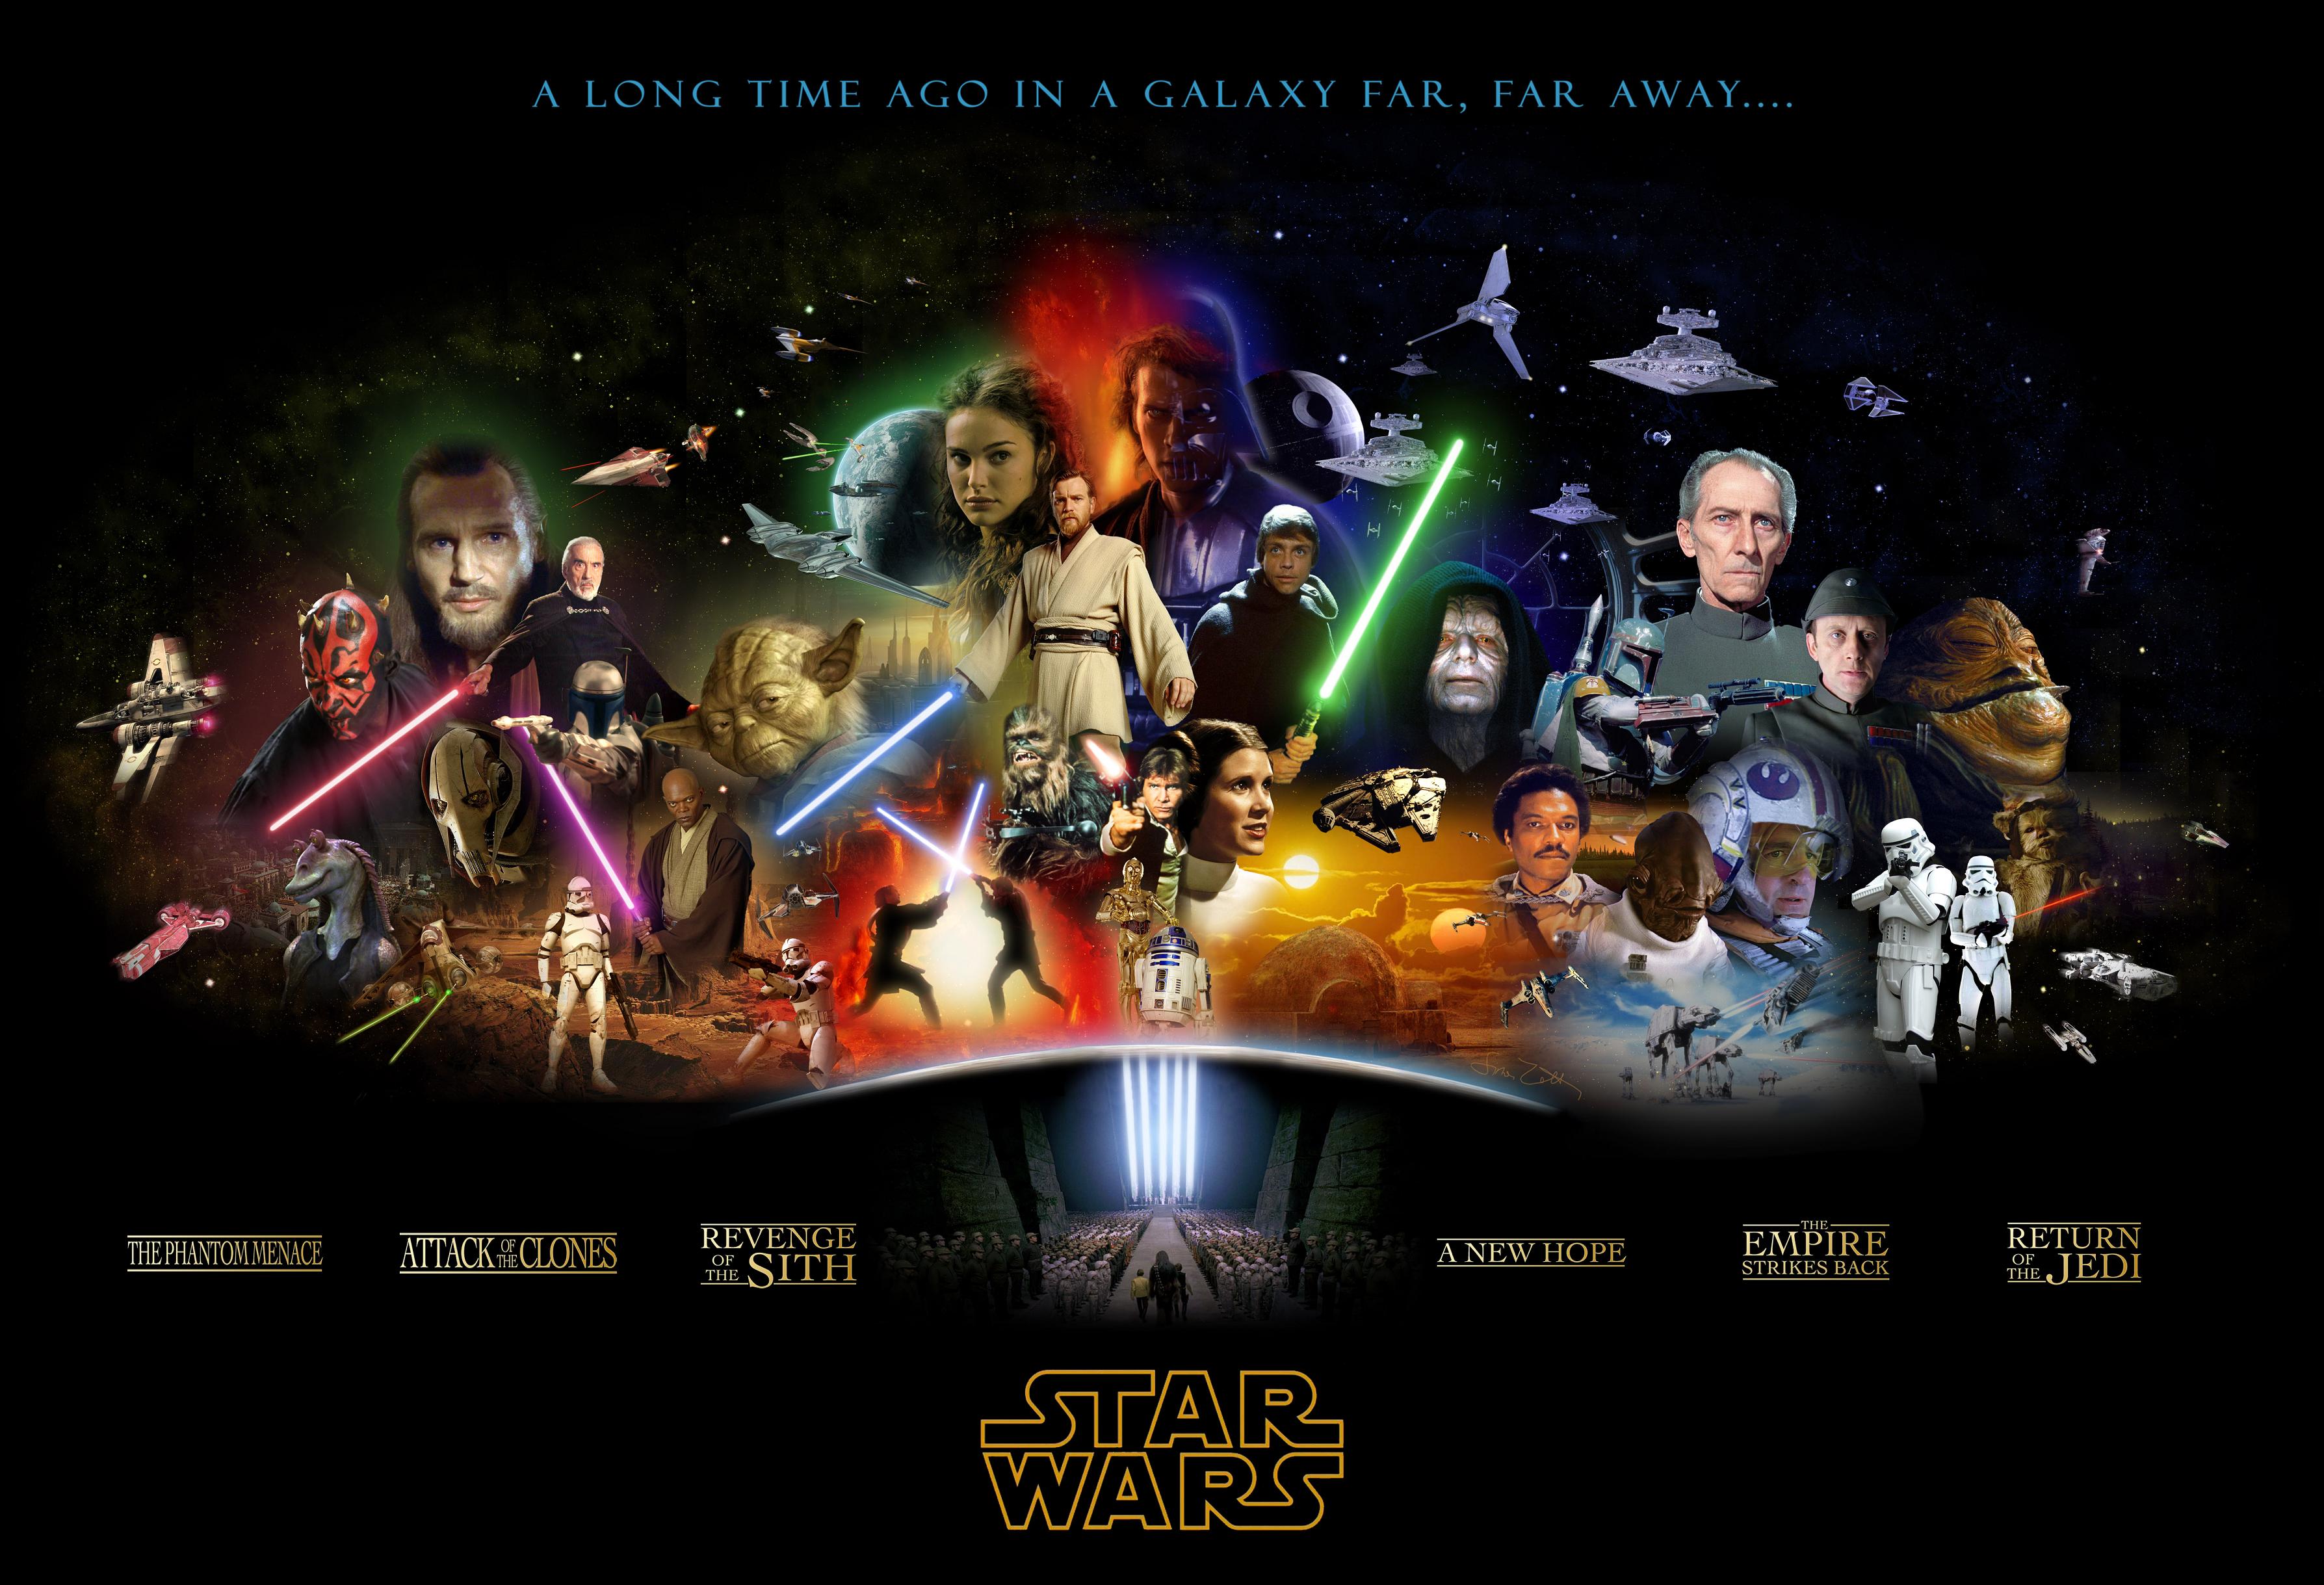 Star Wars Lightsaber Anakin Skywalker Leia Organa Darth Sidious Darth Maul Obi Wan Kenobi Luke Skywa 3575x2438